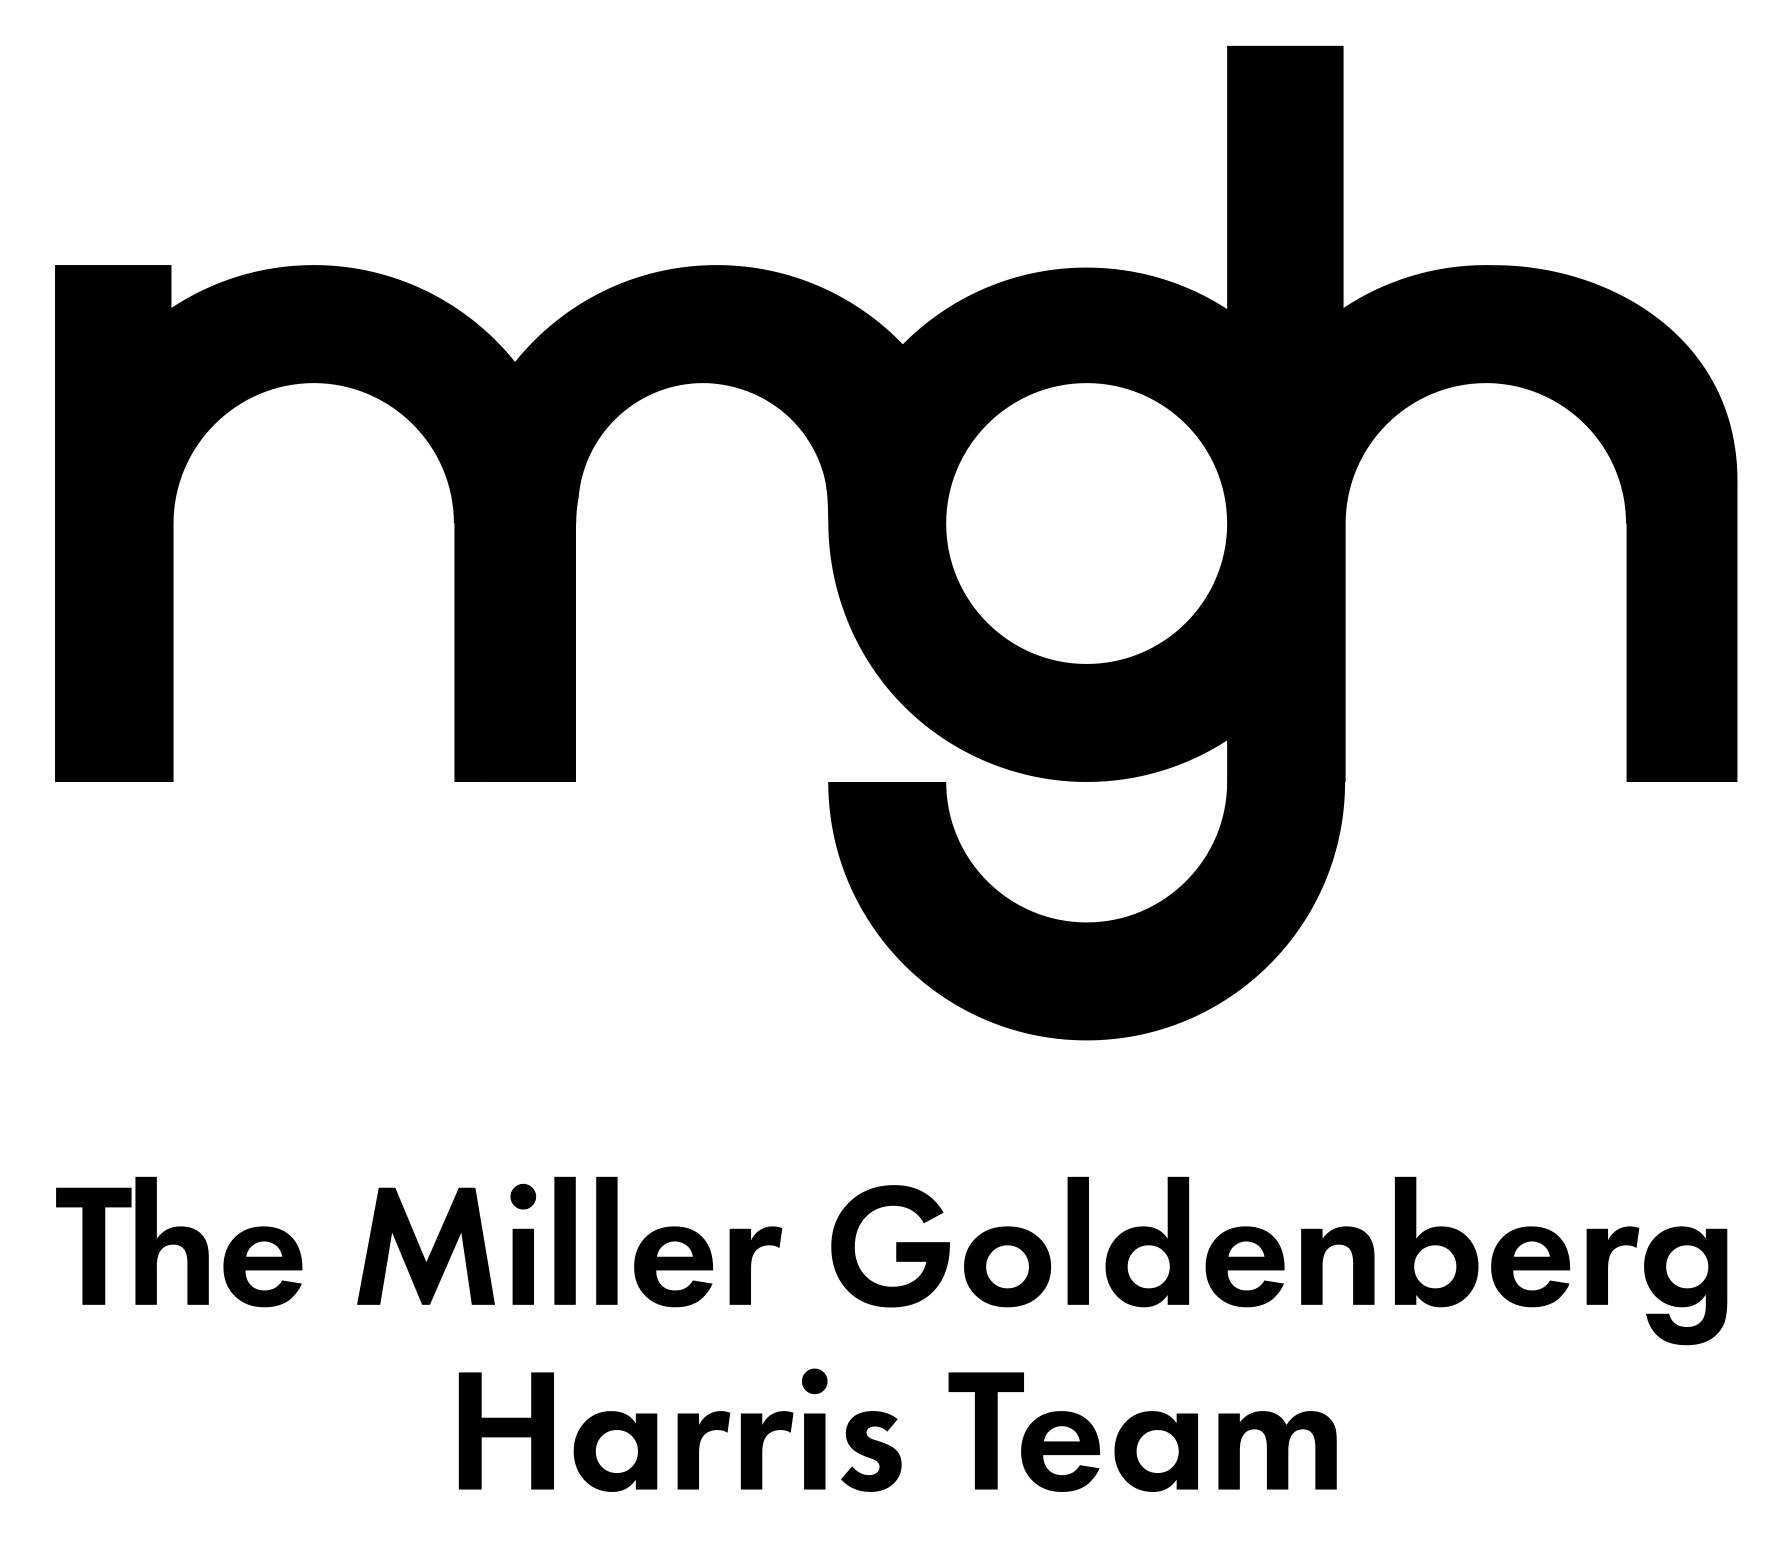 A text banner of The Miller Goldenberg.